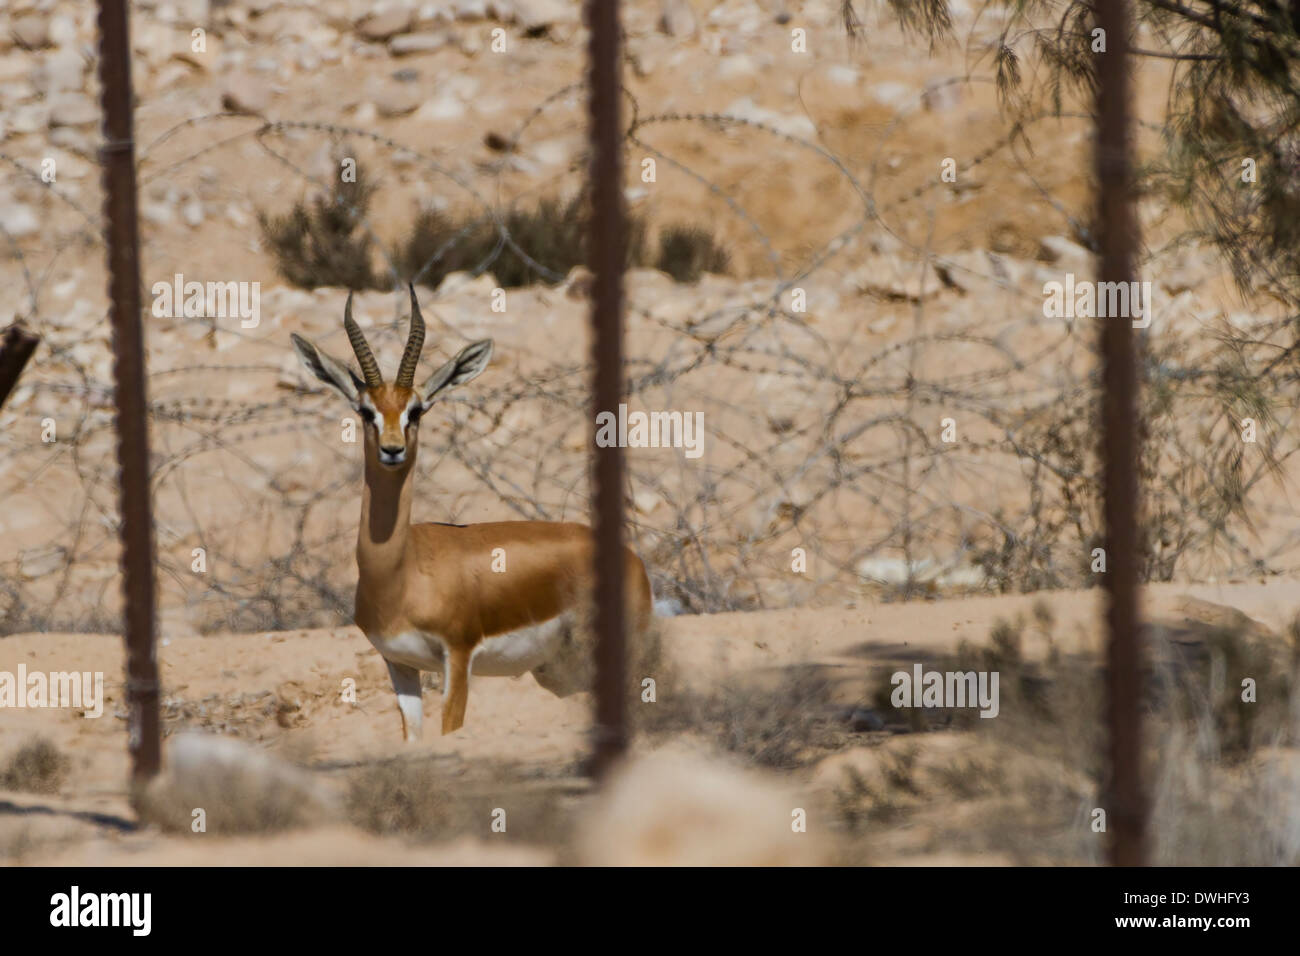 Gazelle hinter einem Zaun im militärischen Bereich. Negev, Israel. Militärische Sperrgebiete sind ein sicherer Hafen für Wildtiere geworden. Stockfoto